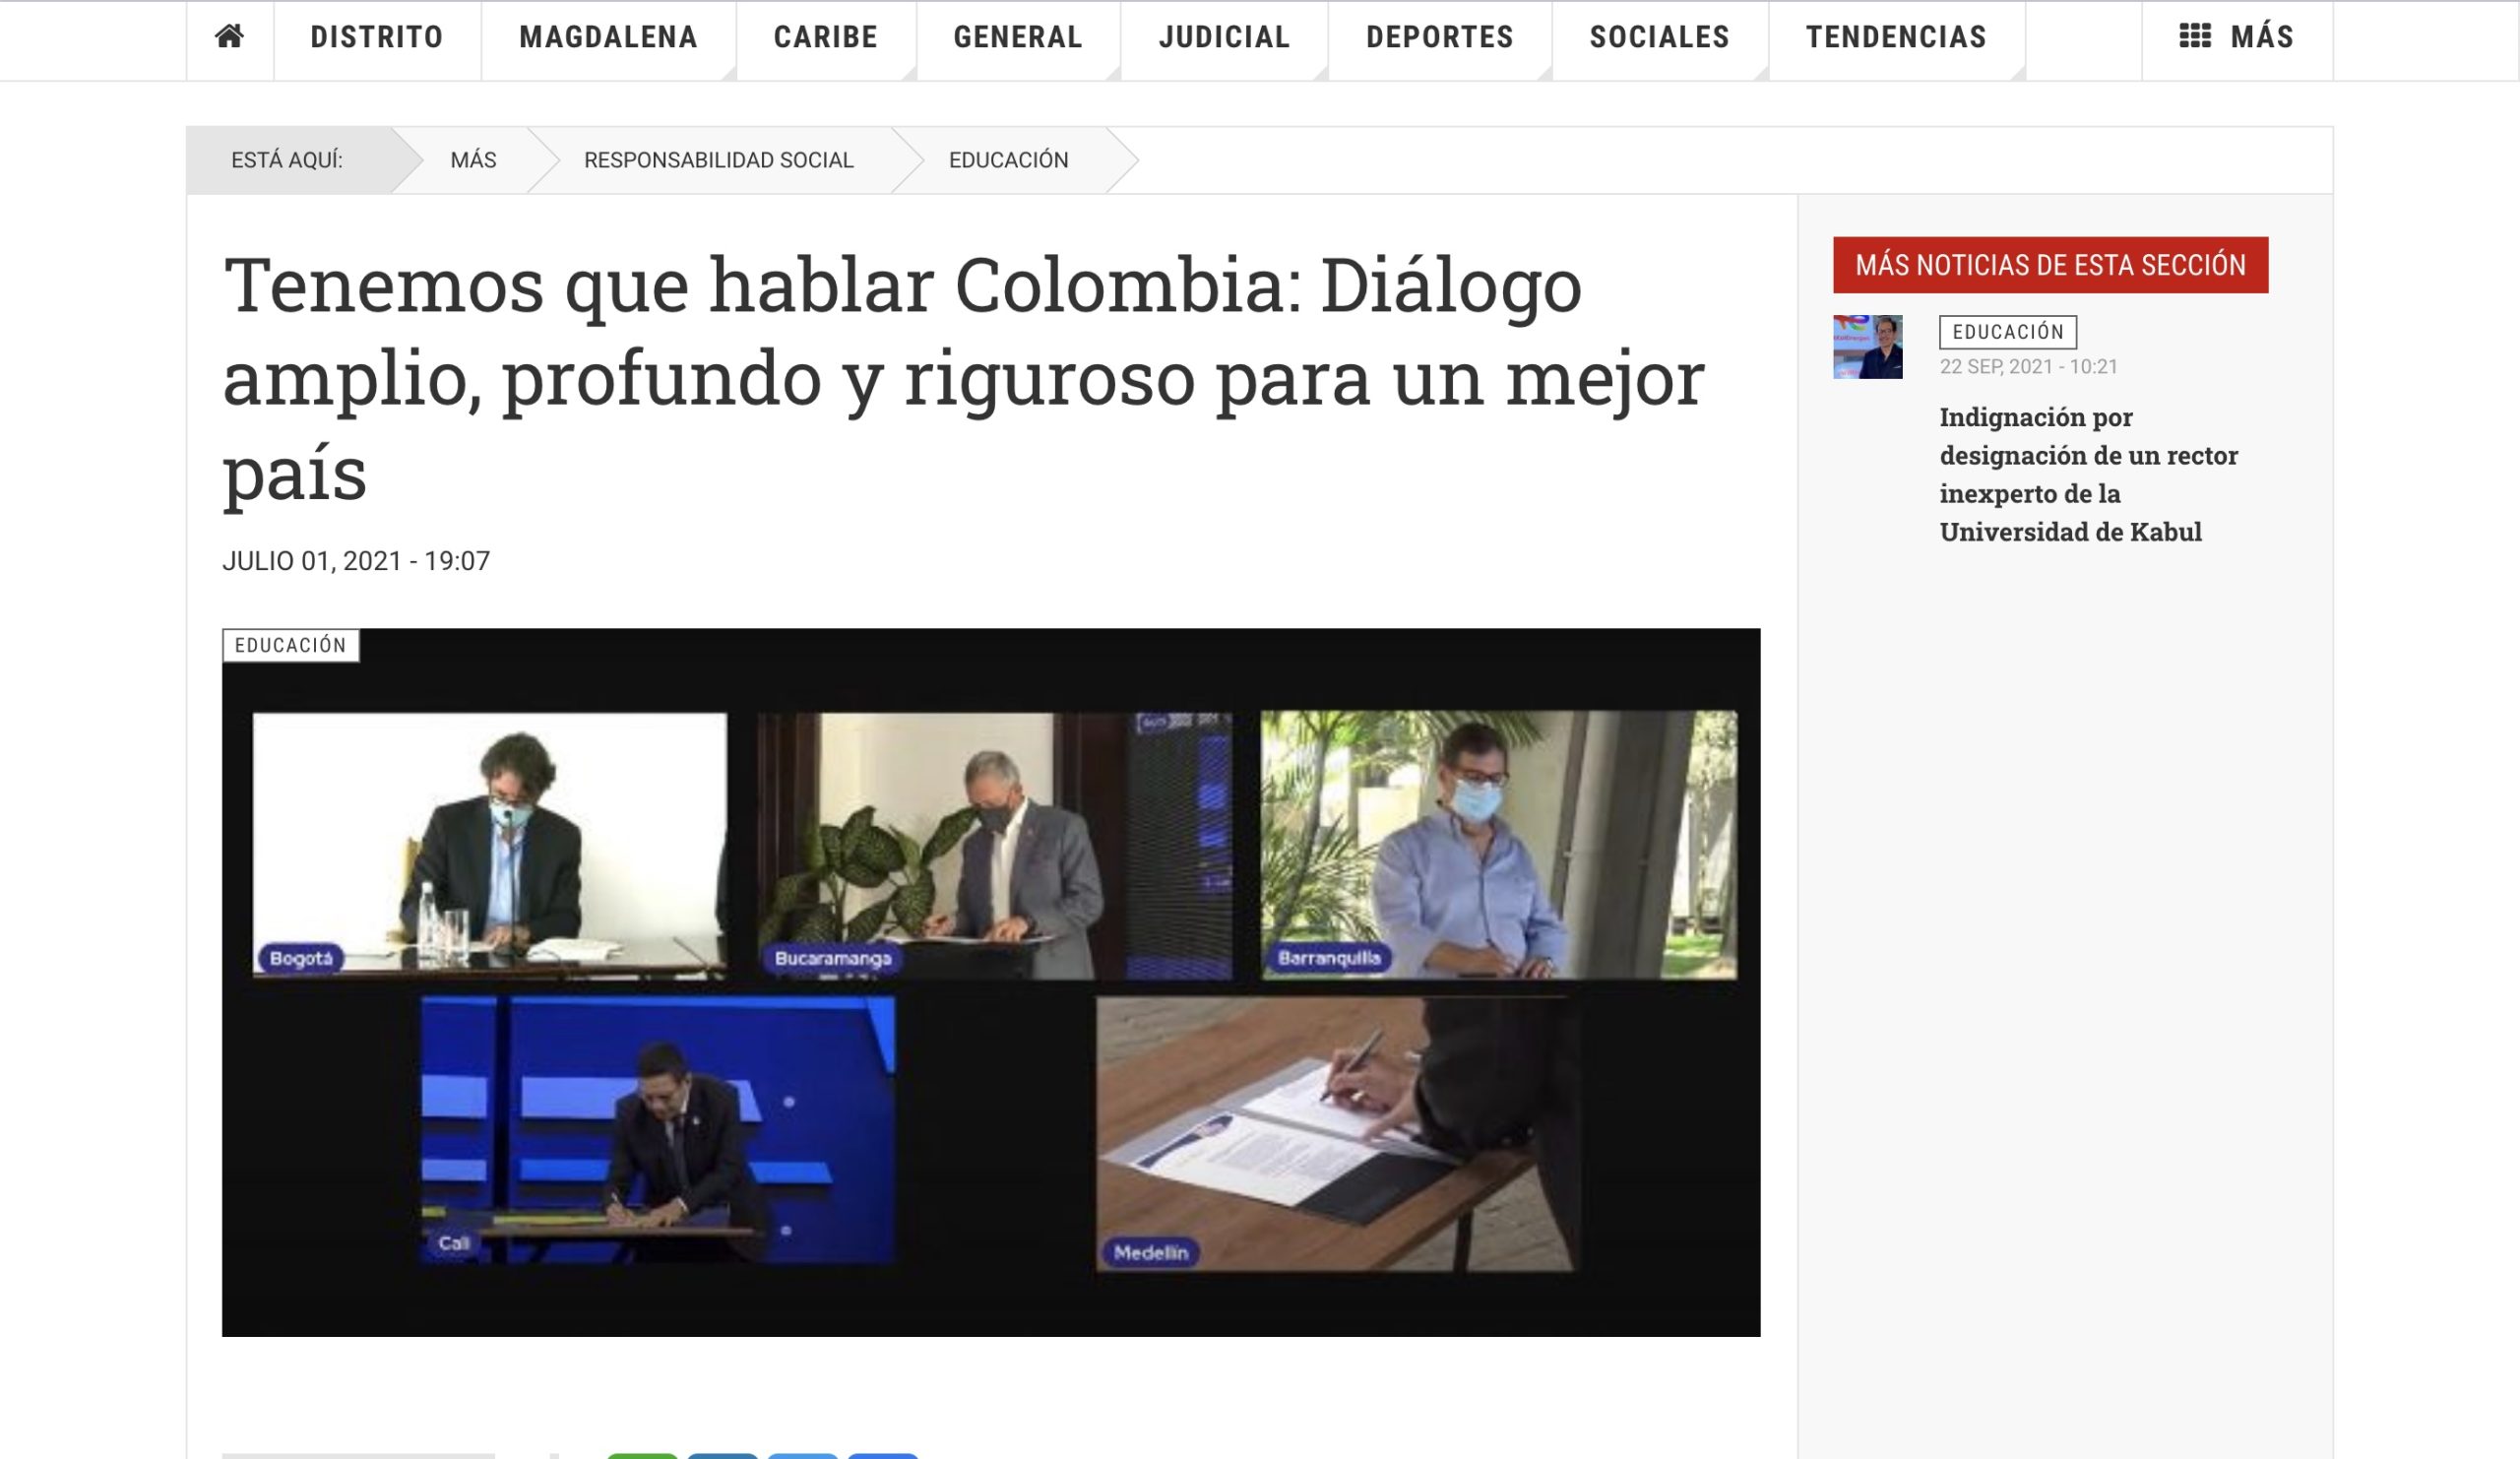 Tenemos que hablar Colombia: Diálogo amplio, profundo y riguroso para un mejor país